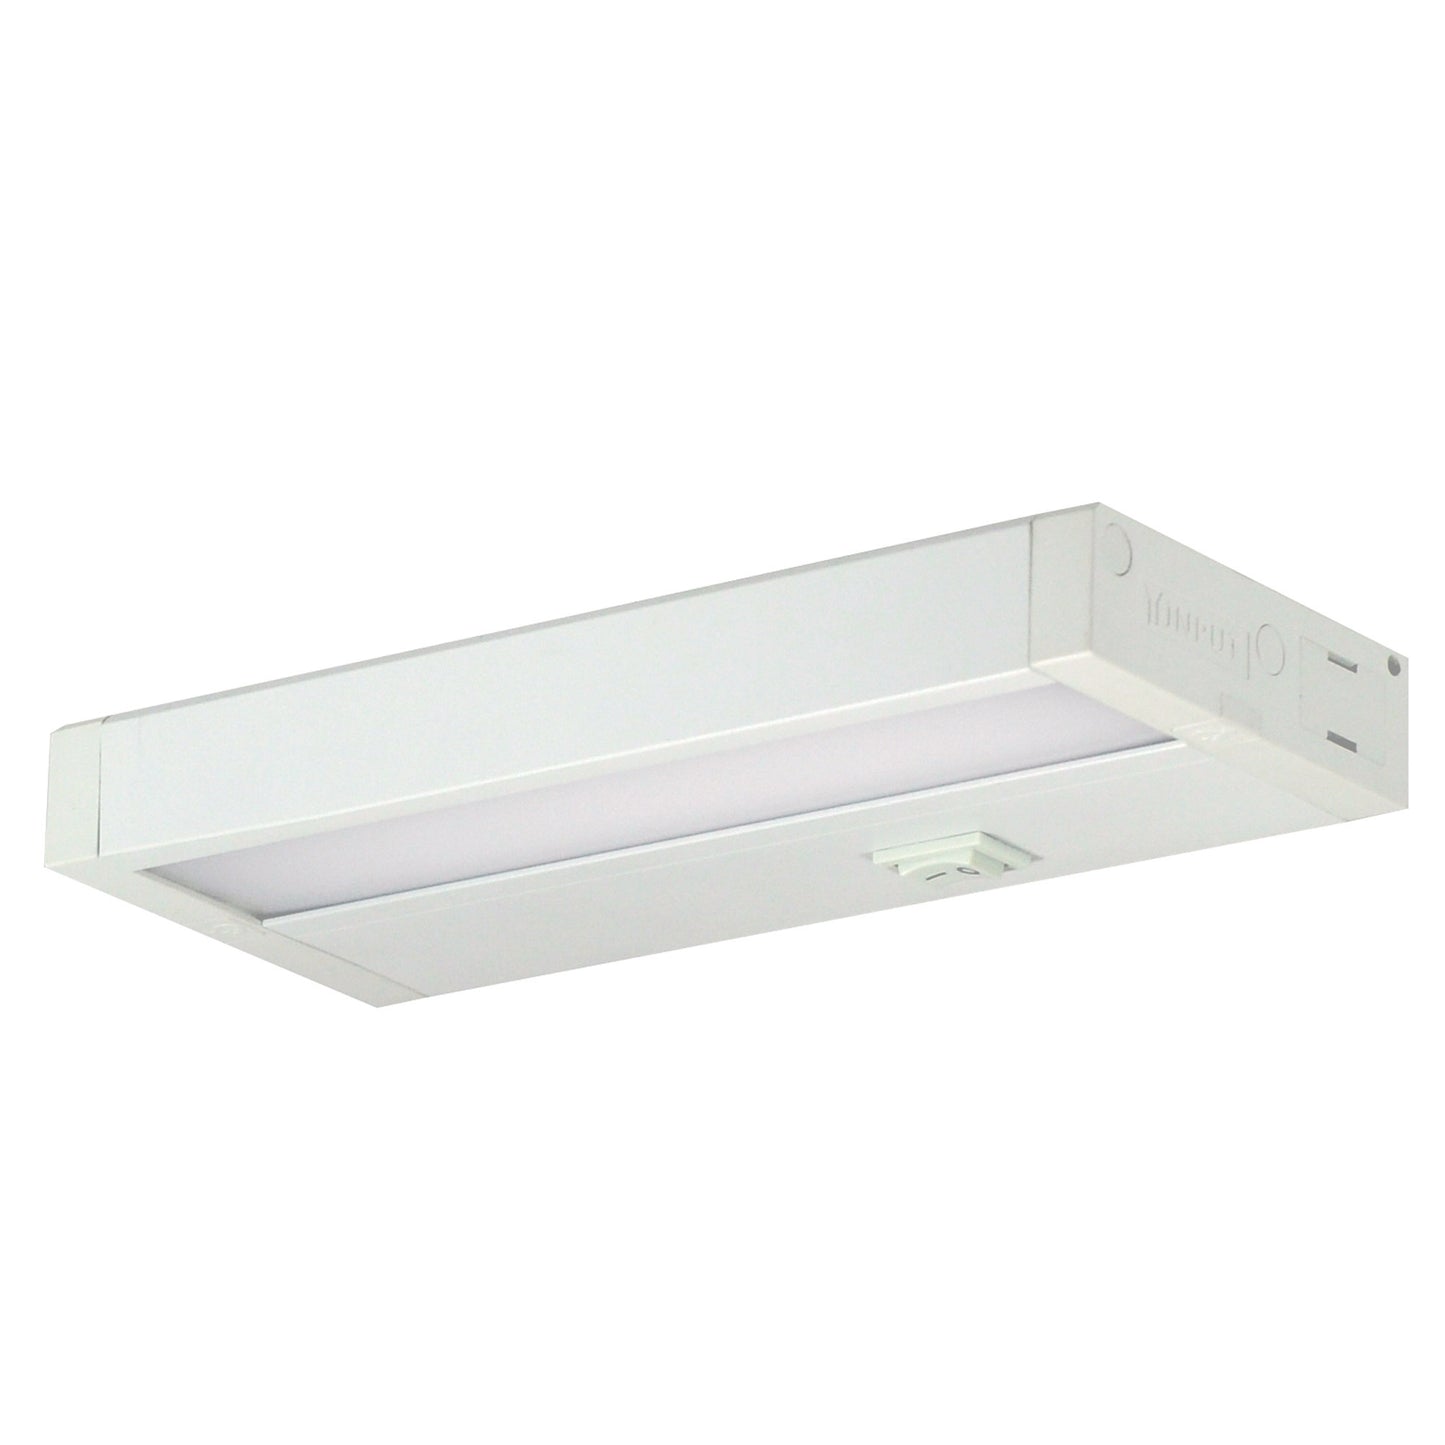 Nora Lighting 11" LEDUR Tunable White LED Undercabinet